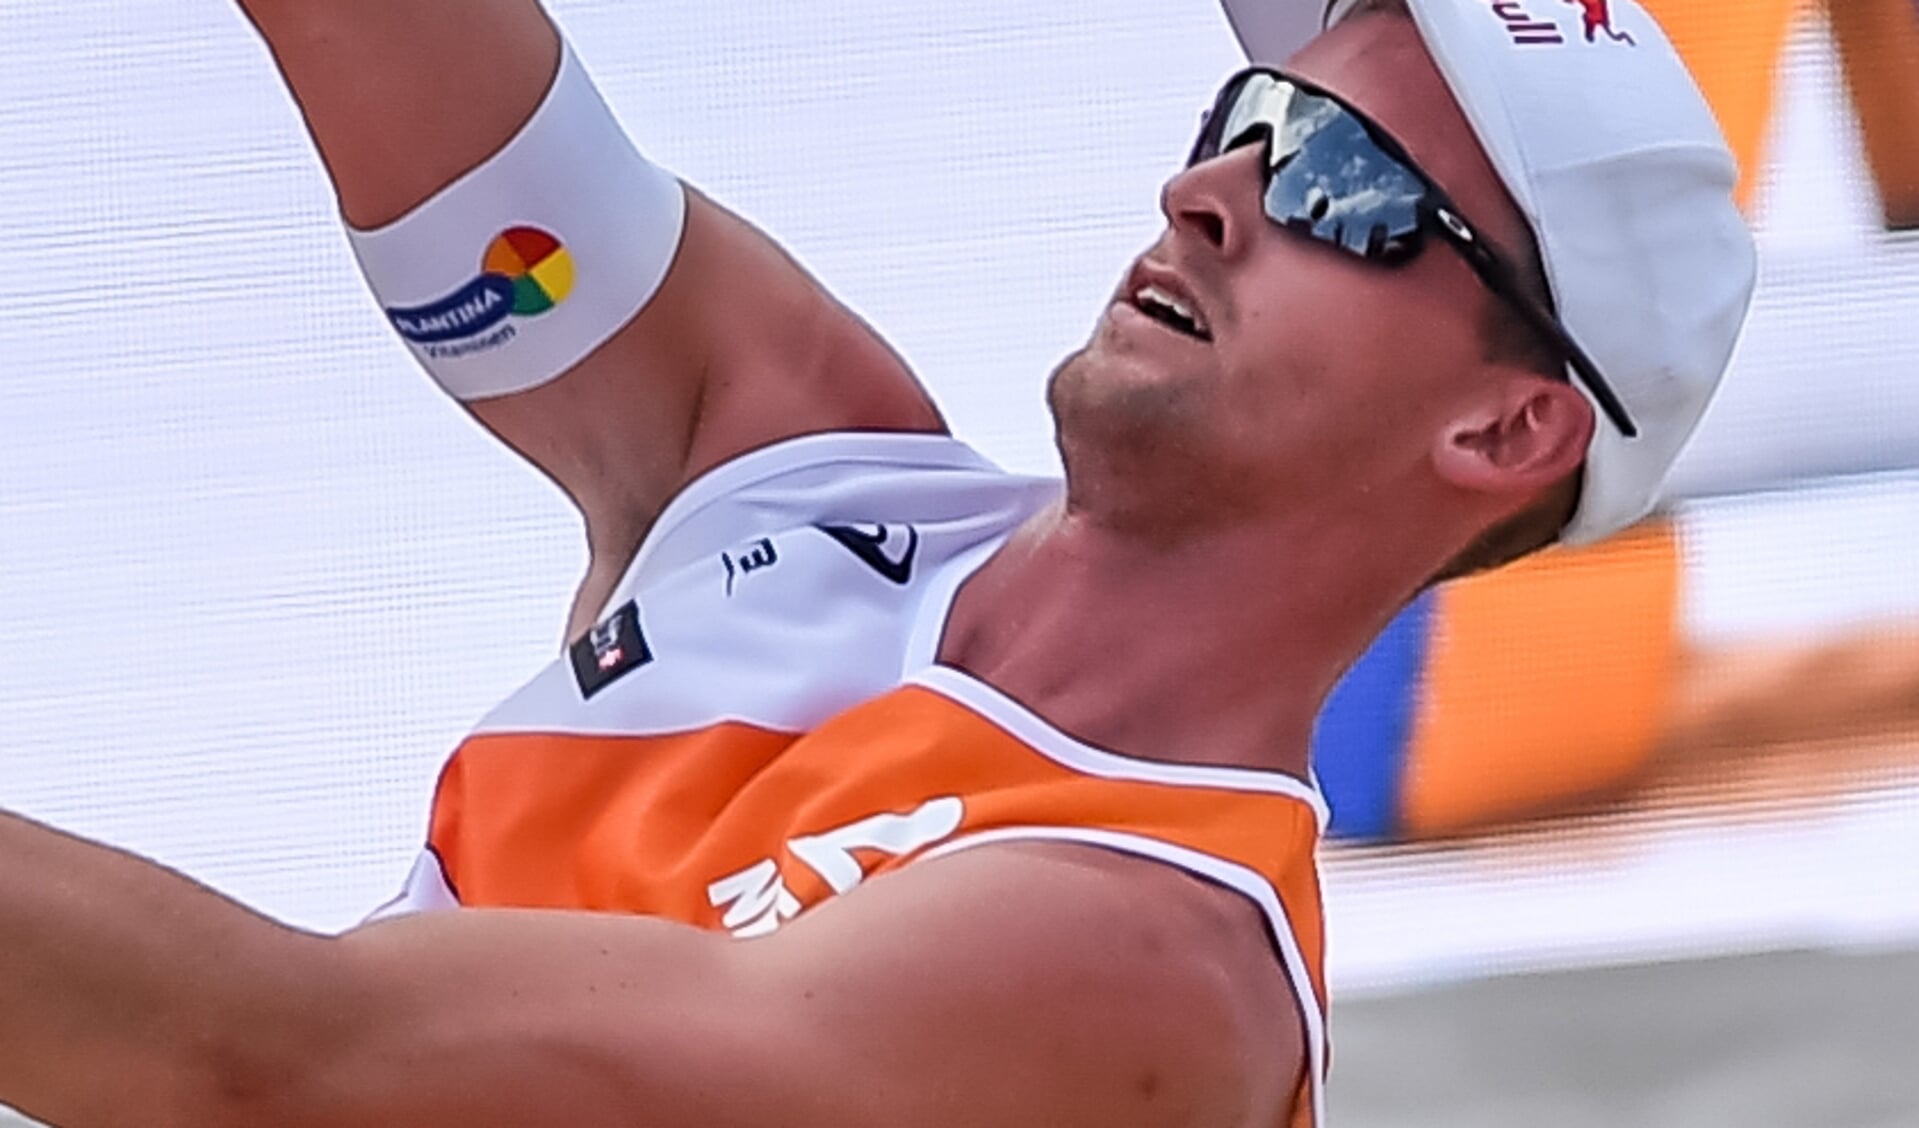 Nieuwegeiner Robert Meeuwsen tijdens een beachvolleybaltoernooi in Wenen in 2017.